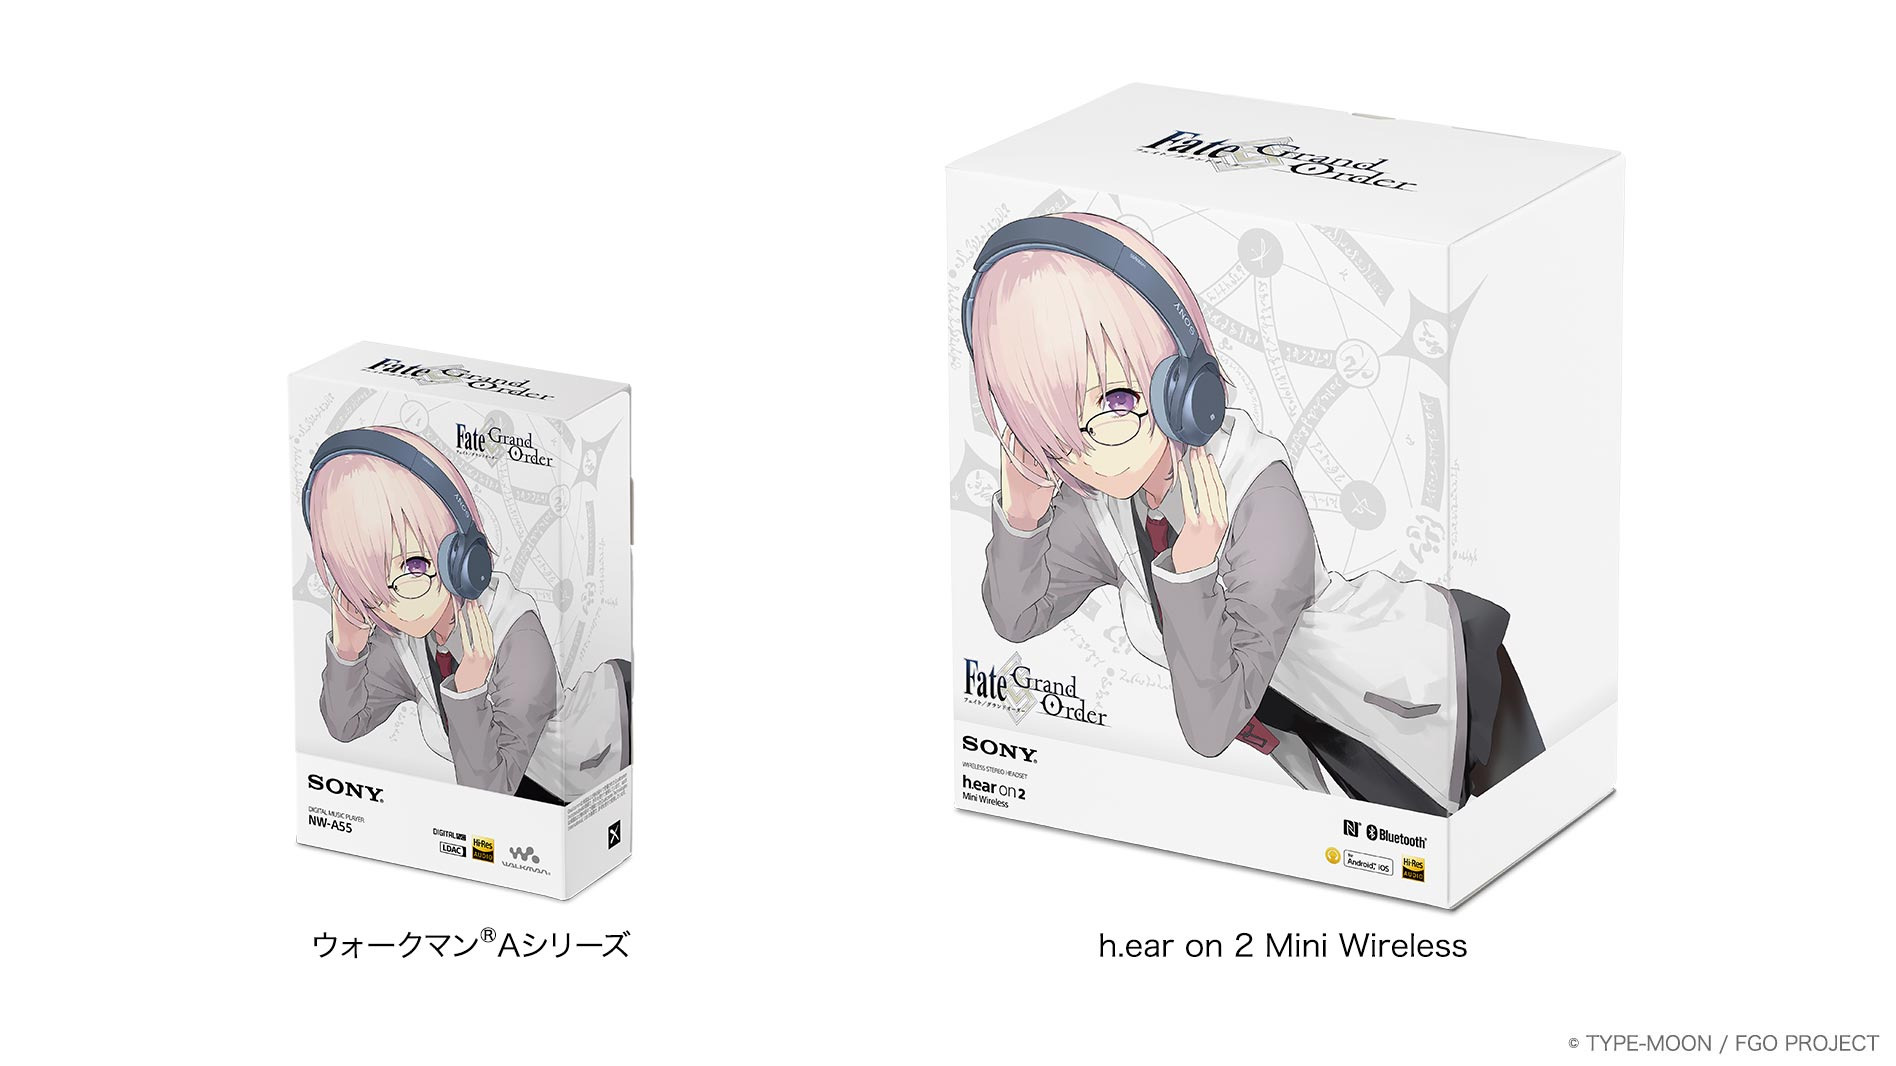 ウォークマン®Aシリーズ ＆ h.ear on 2 Mini Wireless『Fate/Grand Order』Edition |  ポータブルオーディオプレーヤー WALKMAN ウォークマン | ソニー